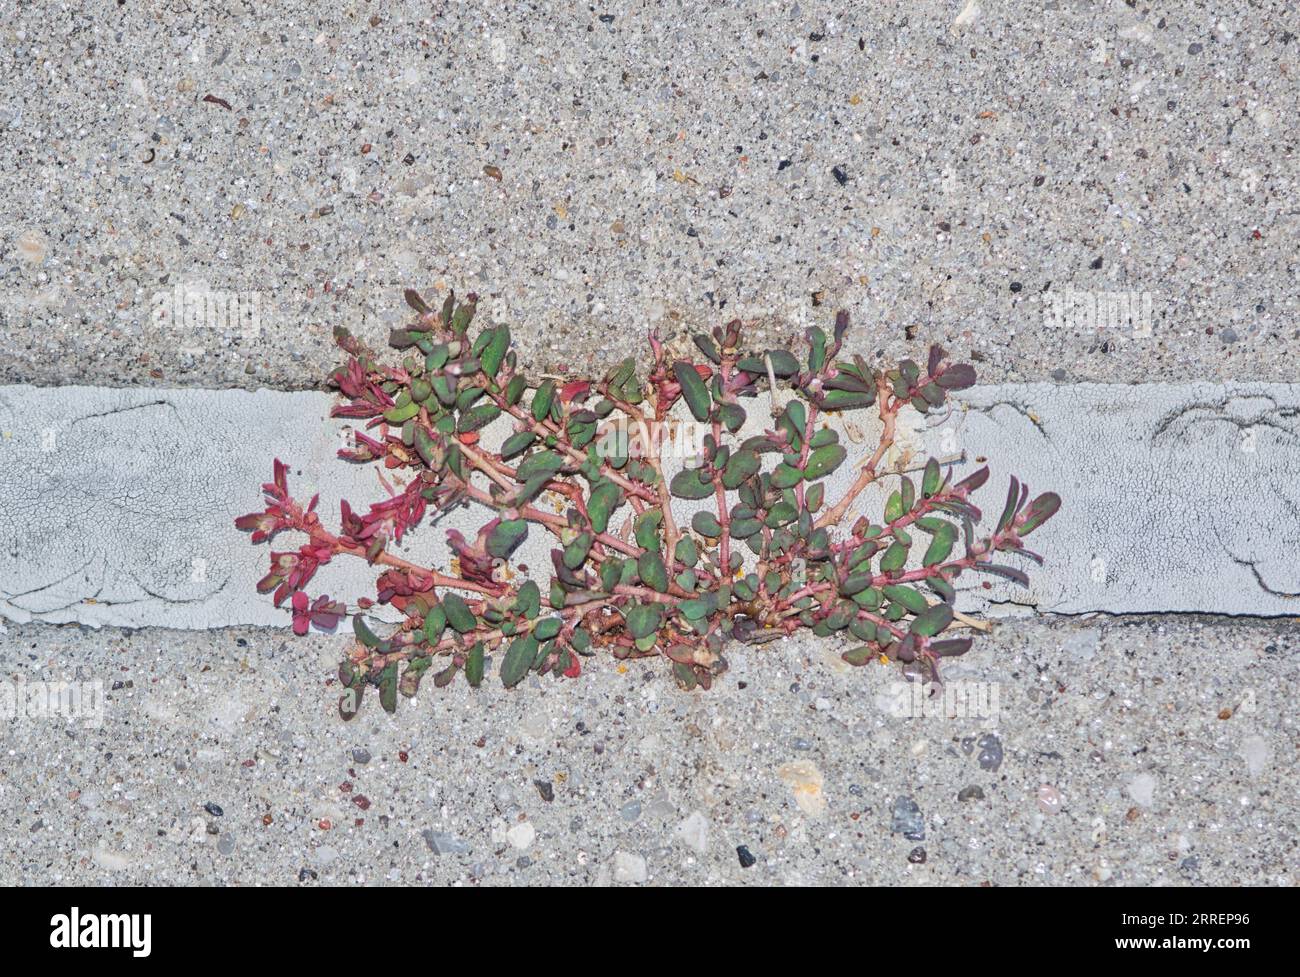 Spurga maculata (Euphorbia maculata) che cresce attraverso una crepa nel marciapiede. Nociva e invasiva erbaccia originaria degli Stati Uniti che prospera in estate. Foto Stock